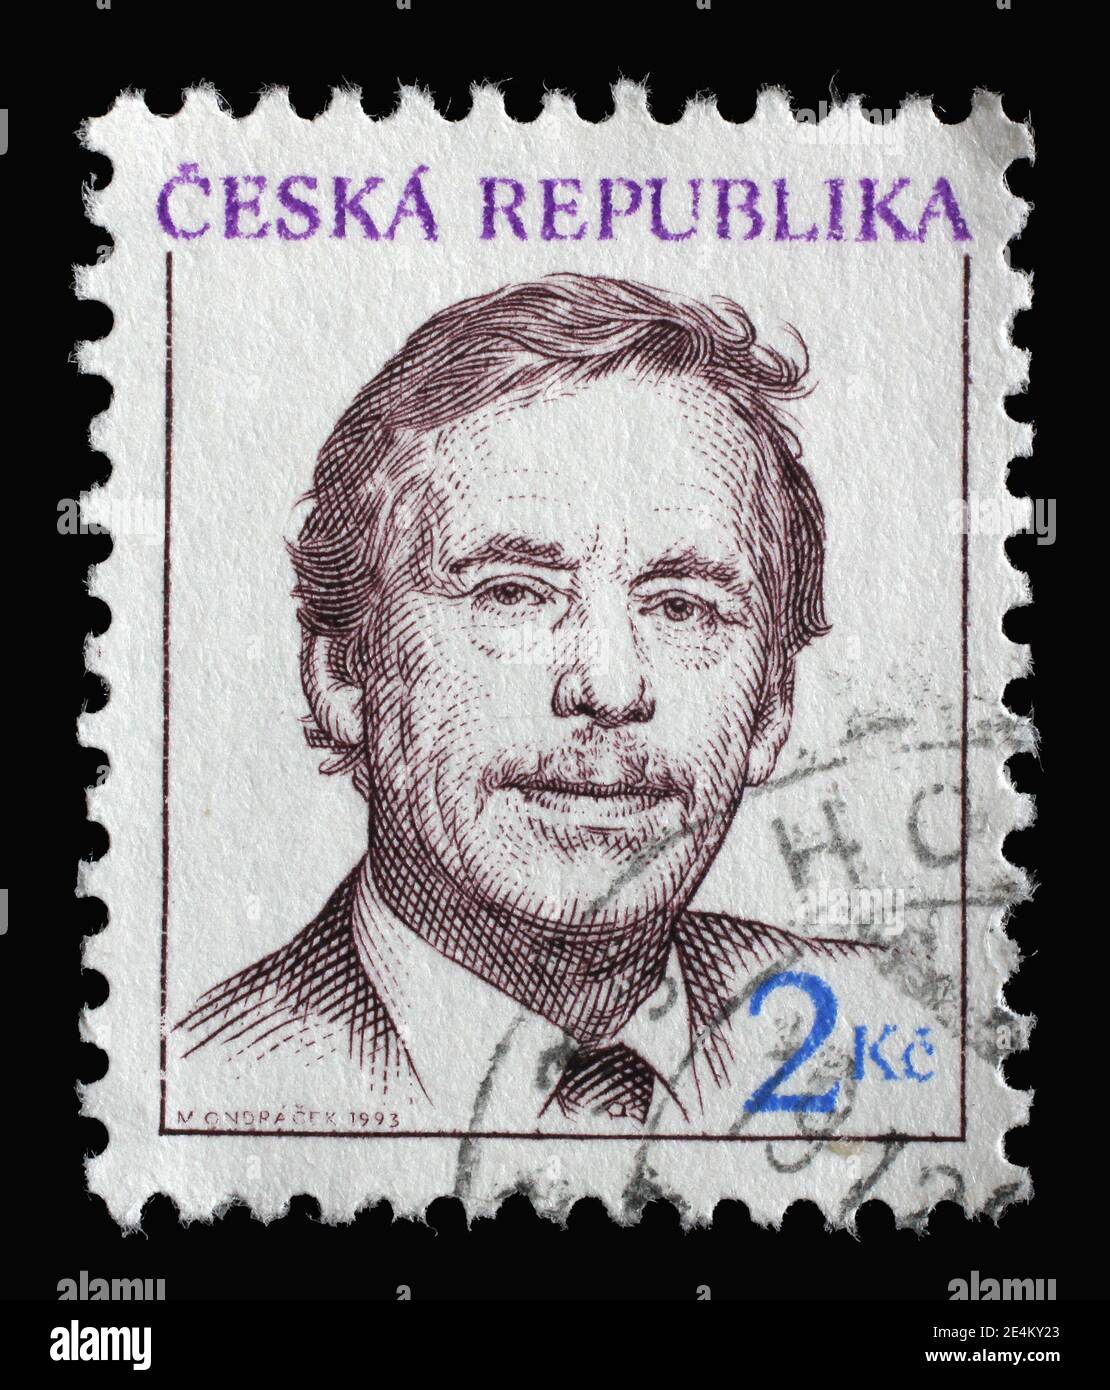 Timbre imprimé en République tchèque montre Vaclav Havel - écrivain et homme d'État tchèque, 1er président de la République tchèque, vers 1993 Banque D'Images